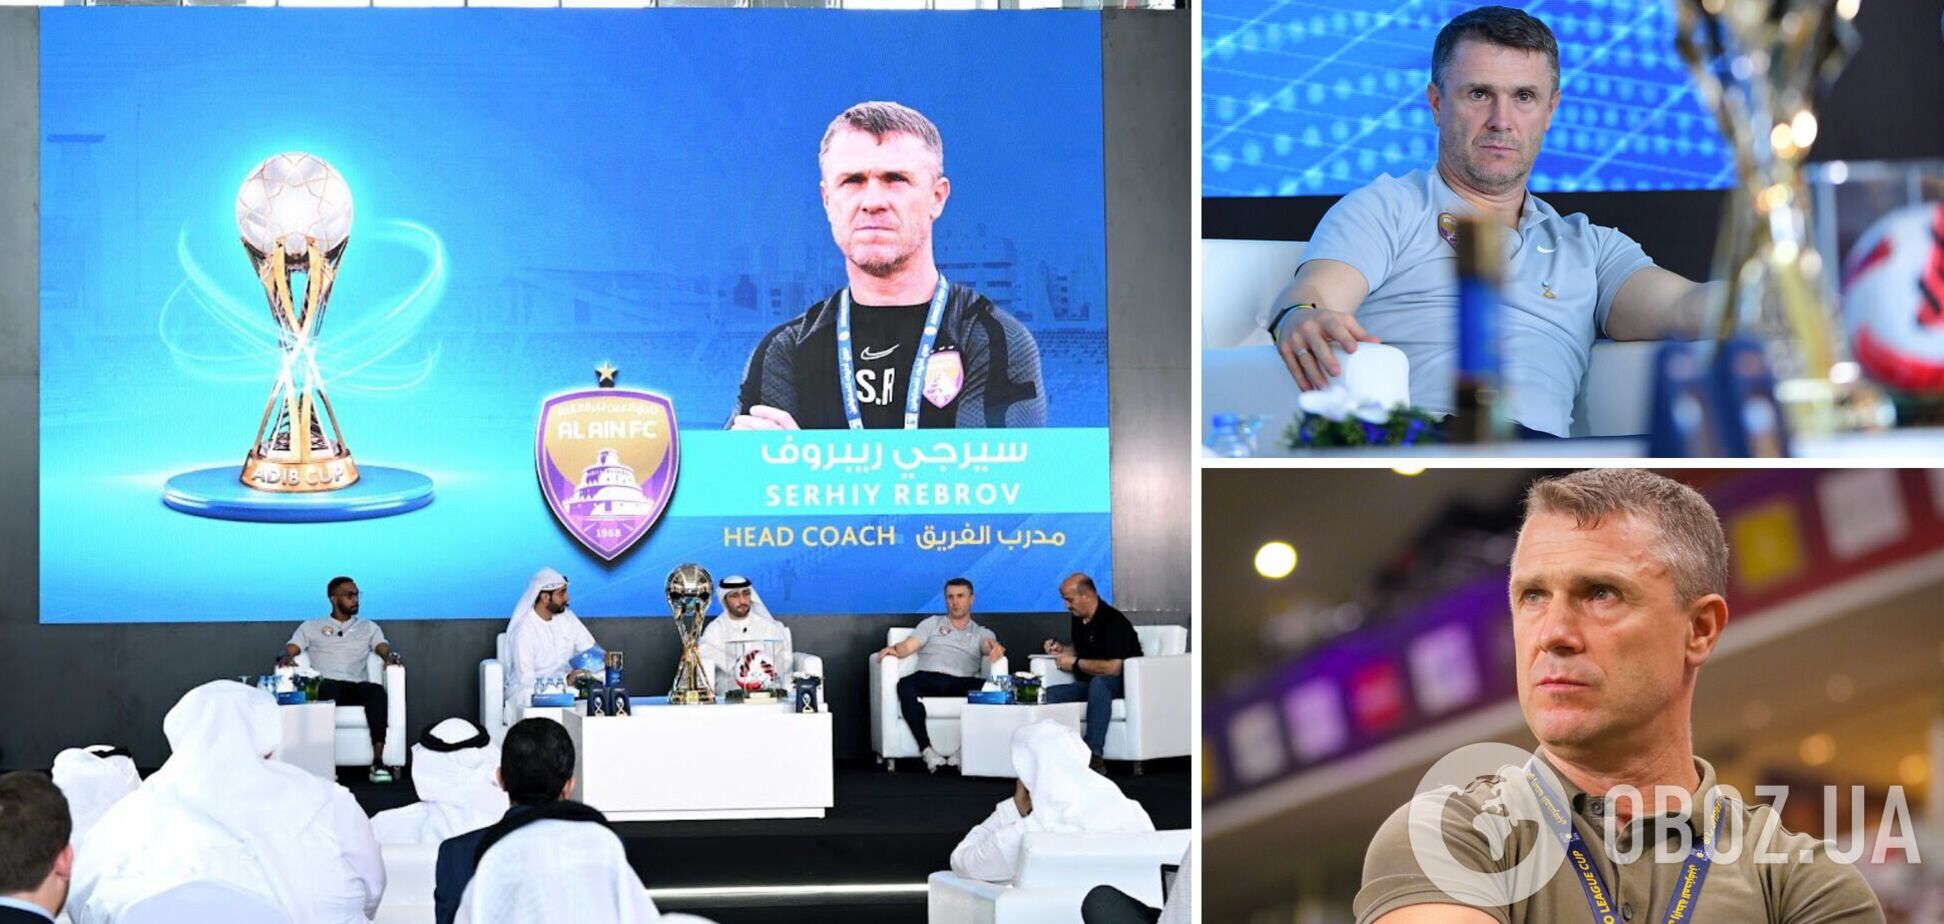 'Хотел бы завершить свою карьеру...' Ребров сделал официальное заявление после поражения в финале Кубка ОАЭ